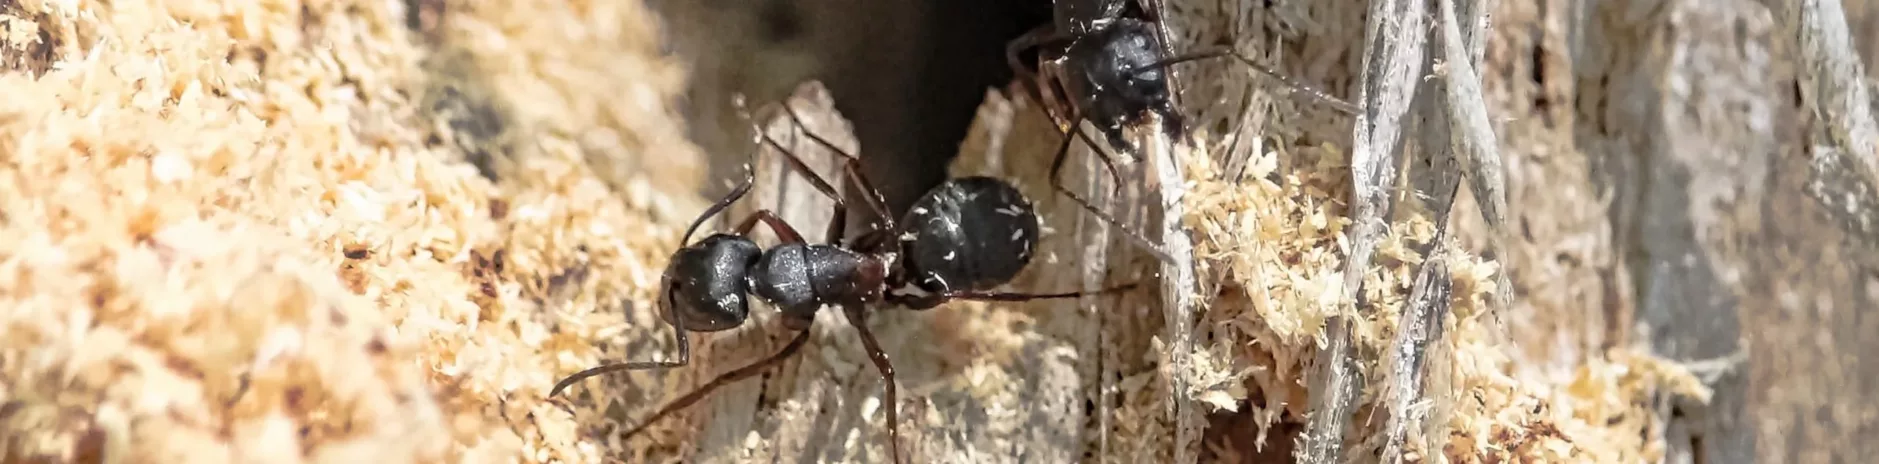 Gros plan sur deux fourmis charpentières